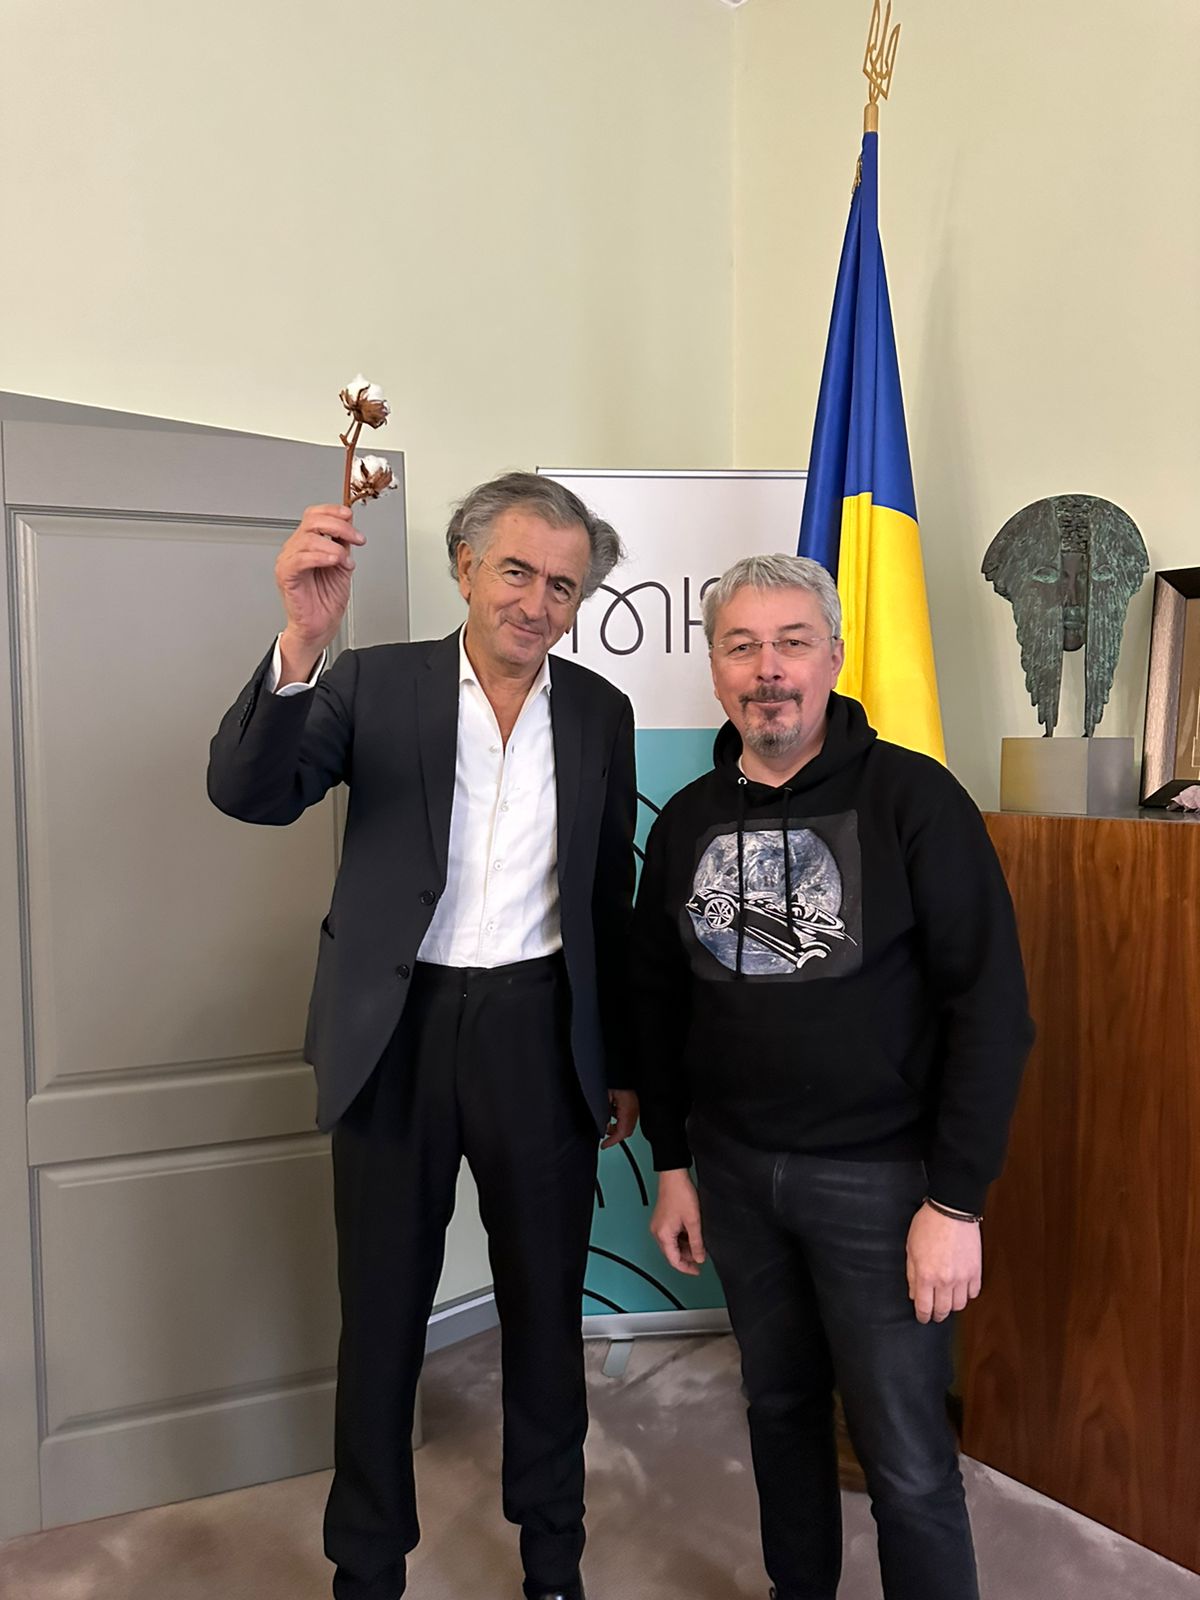 Oleksandr Tkachenko avec Bernard-Henri Lévy. Ils posent devant un drapeau ukrainien. BHL tient une fleur de coton.